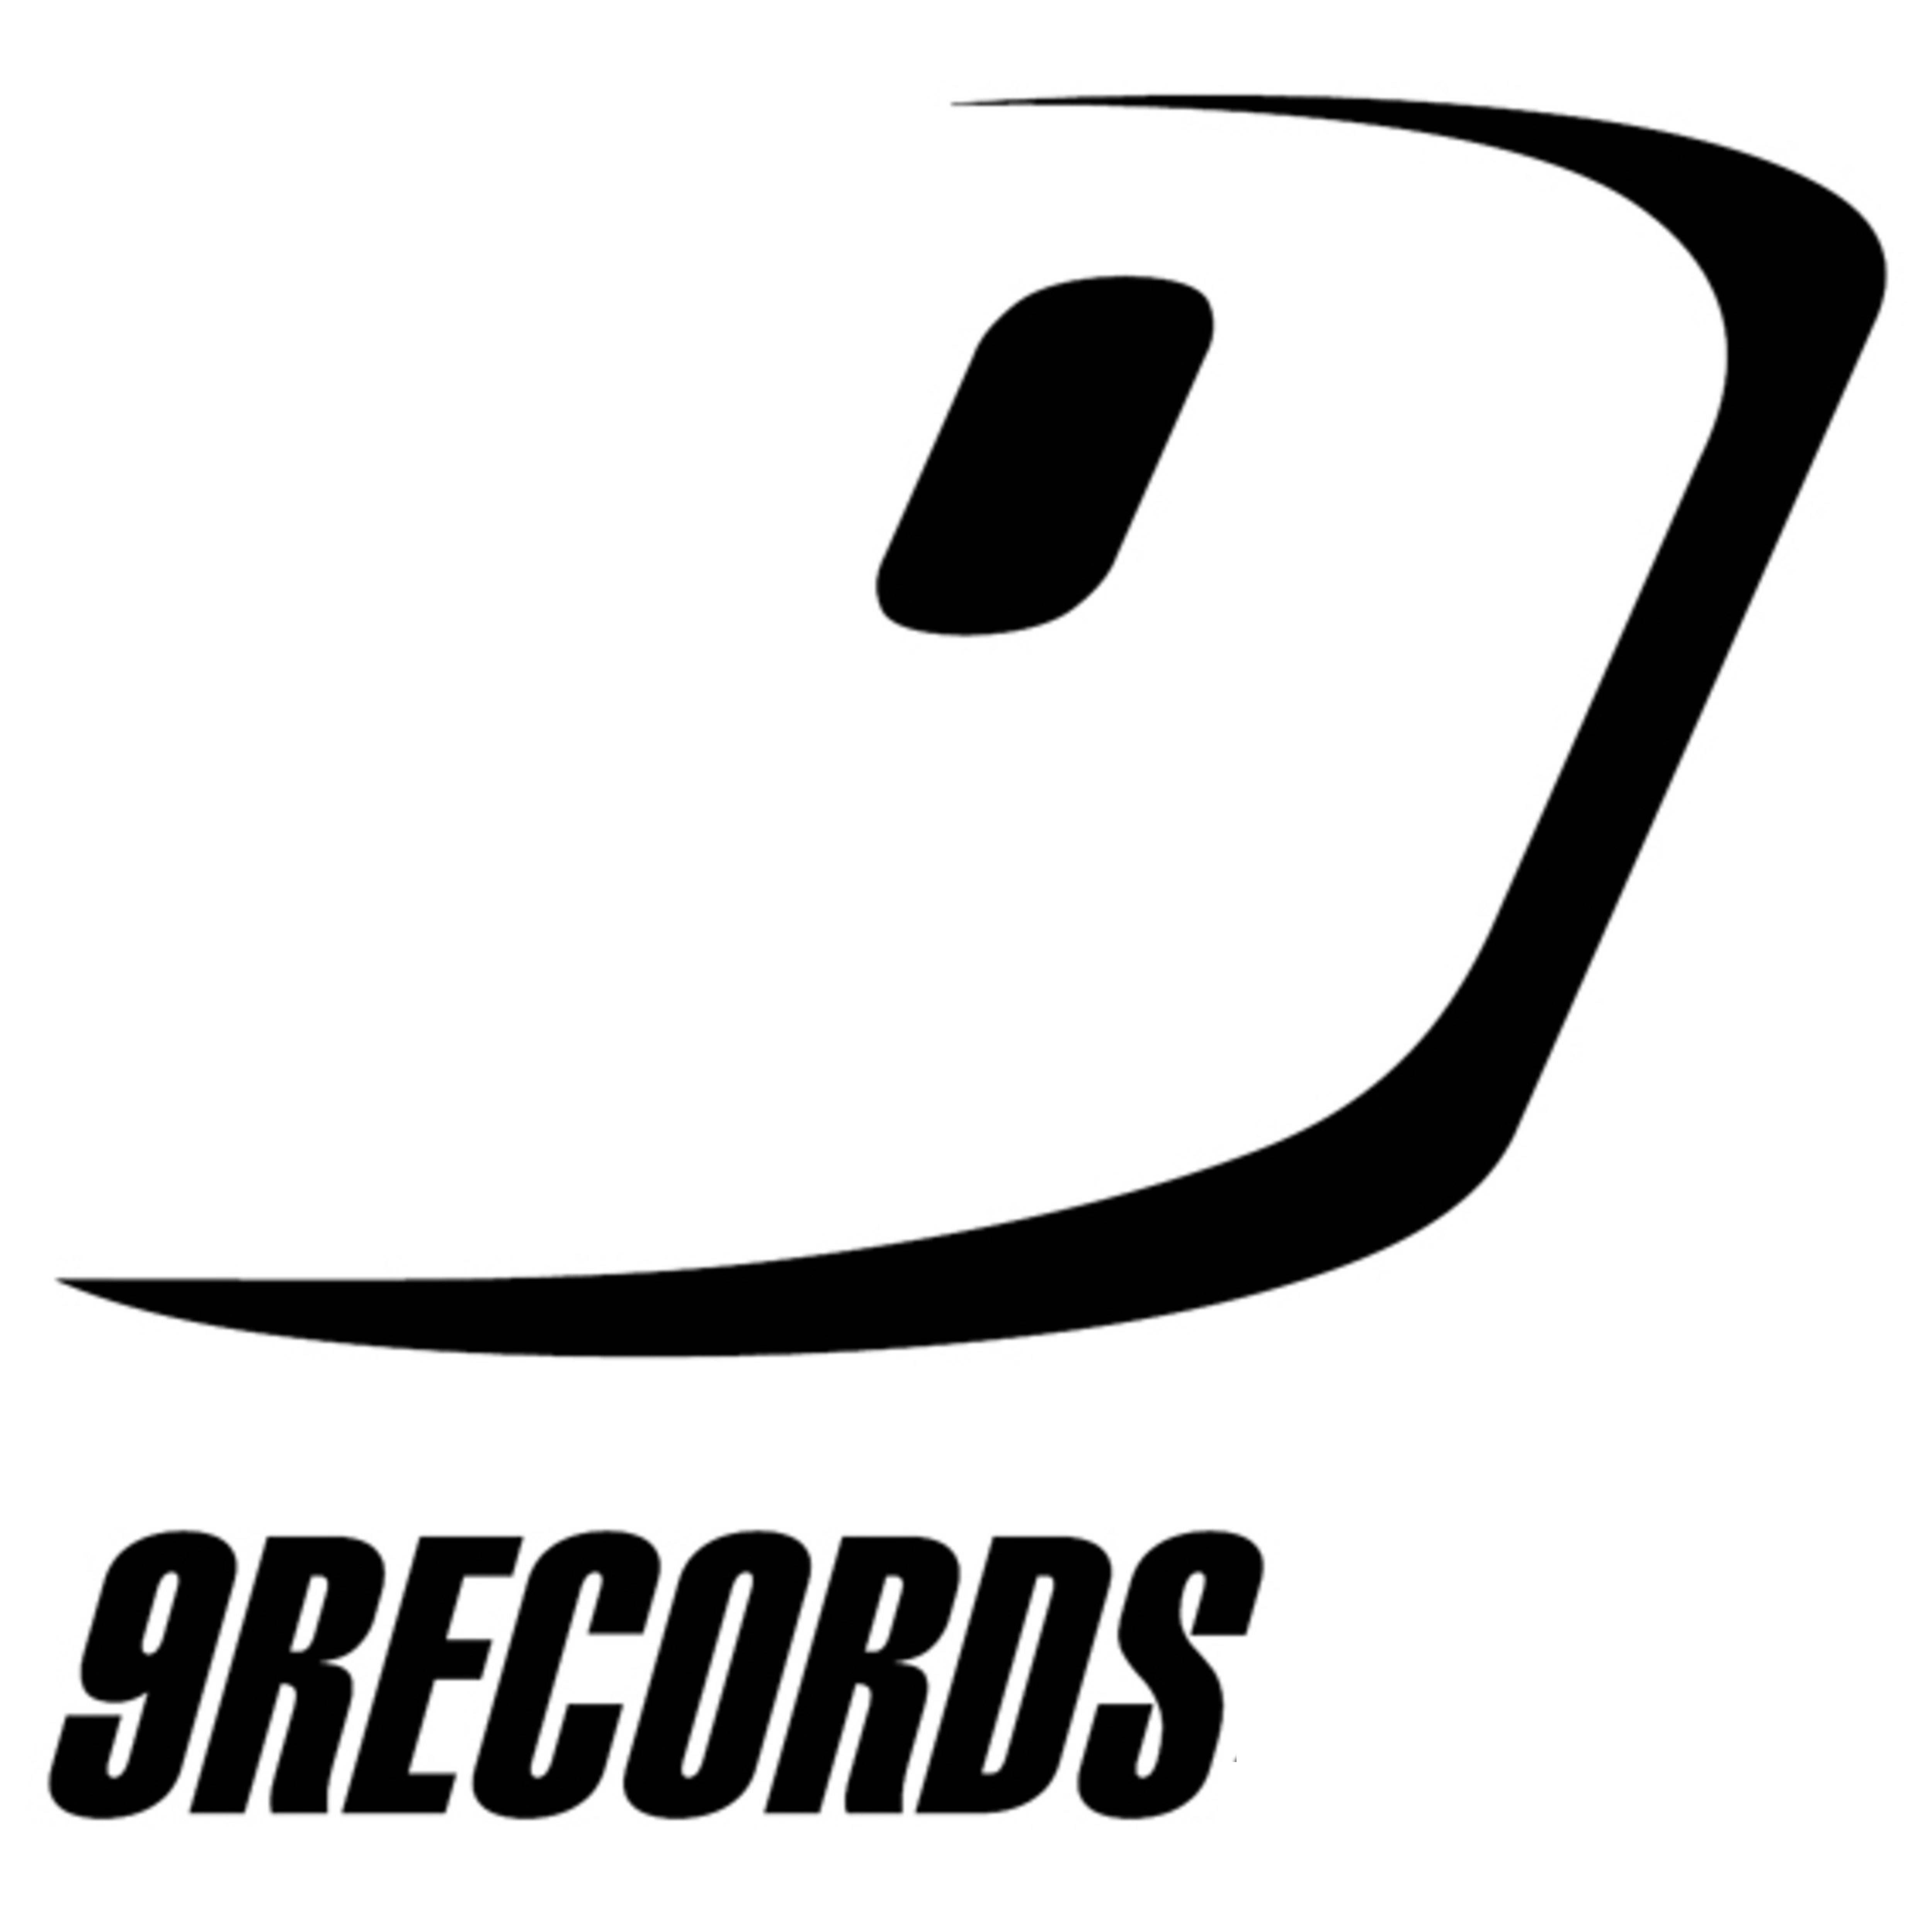 9Records.com